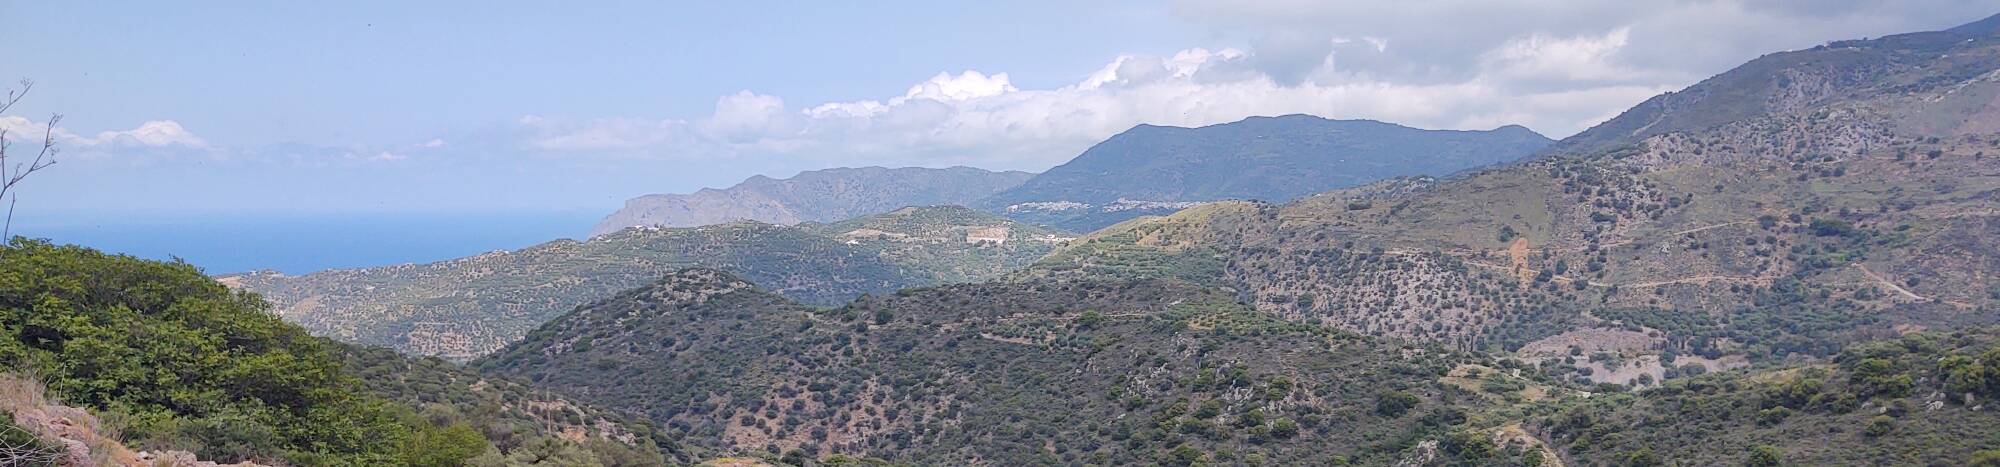 Mountains and the Aegean Sea along the north coast of Crete between Sitia and Agios Nikolaos.